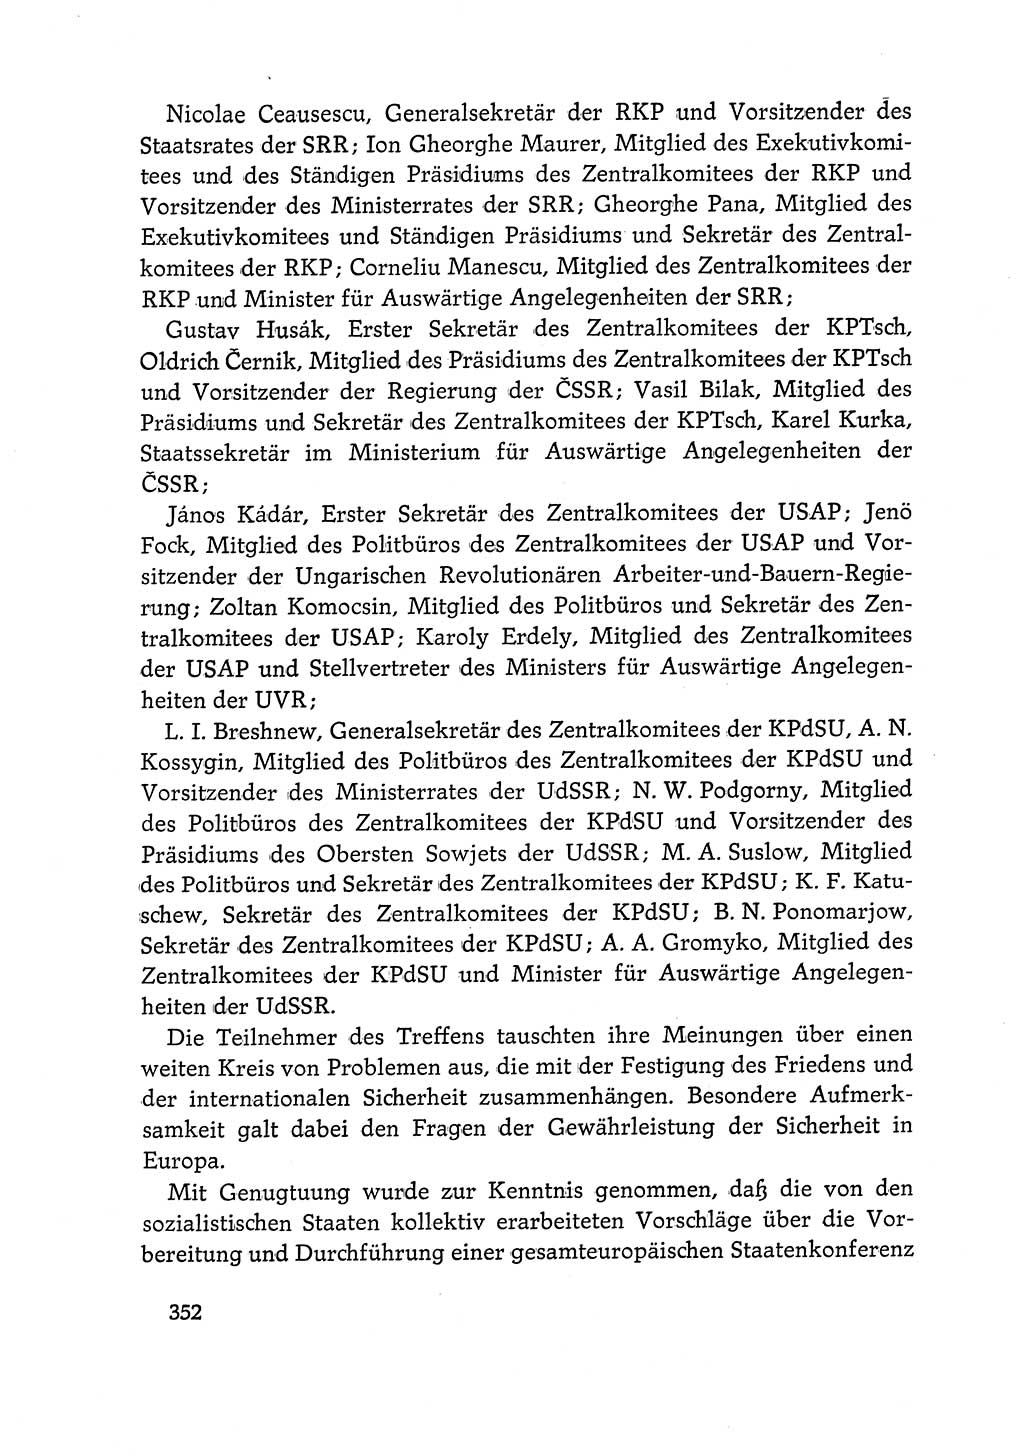 Dokumente der Sozialistischen Einheitspartei Deutschlands (SED) [Deutsche Demokratische Republik (DDR)] 1968-1969, Seite 352 (Dok. SED DDR 1968-1969, S. 352)